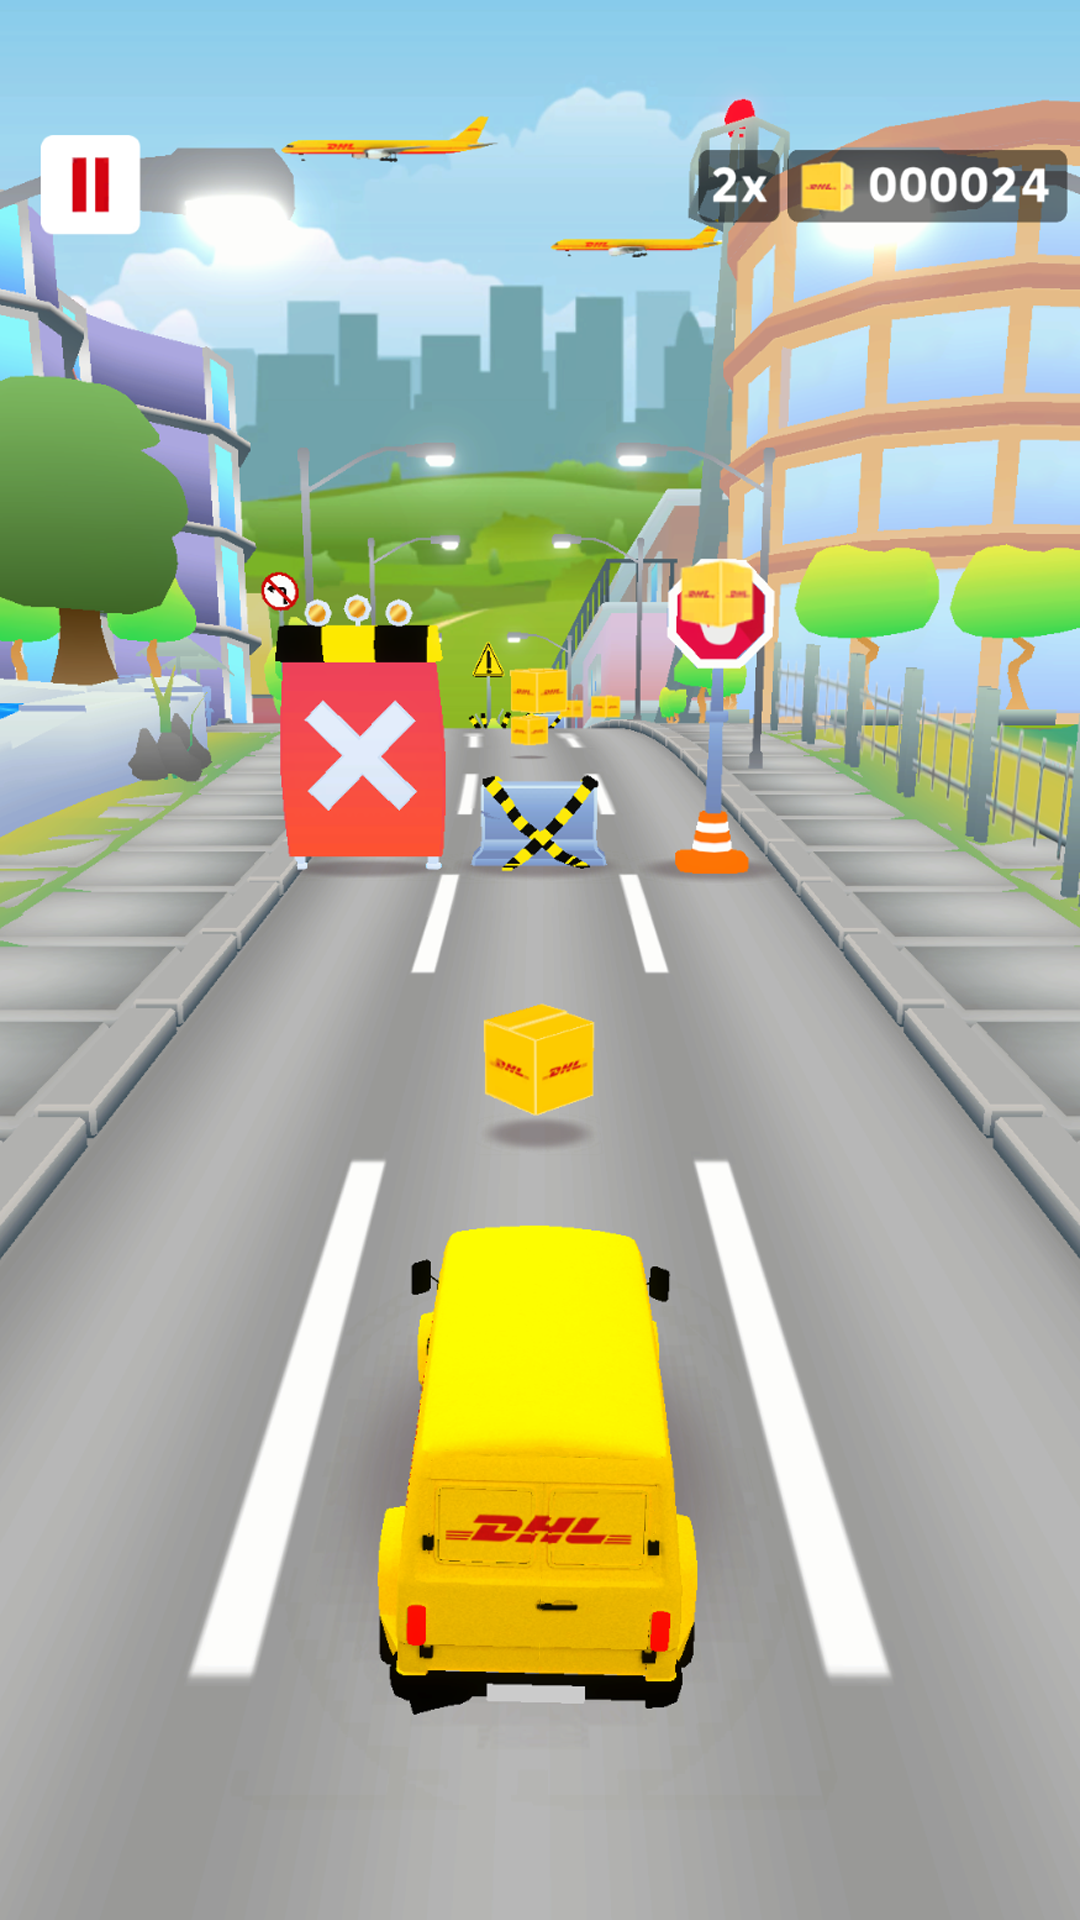 Screenshot of DHL EffiBOT Dash